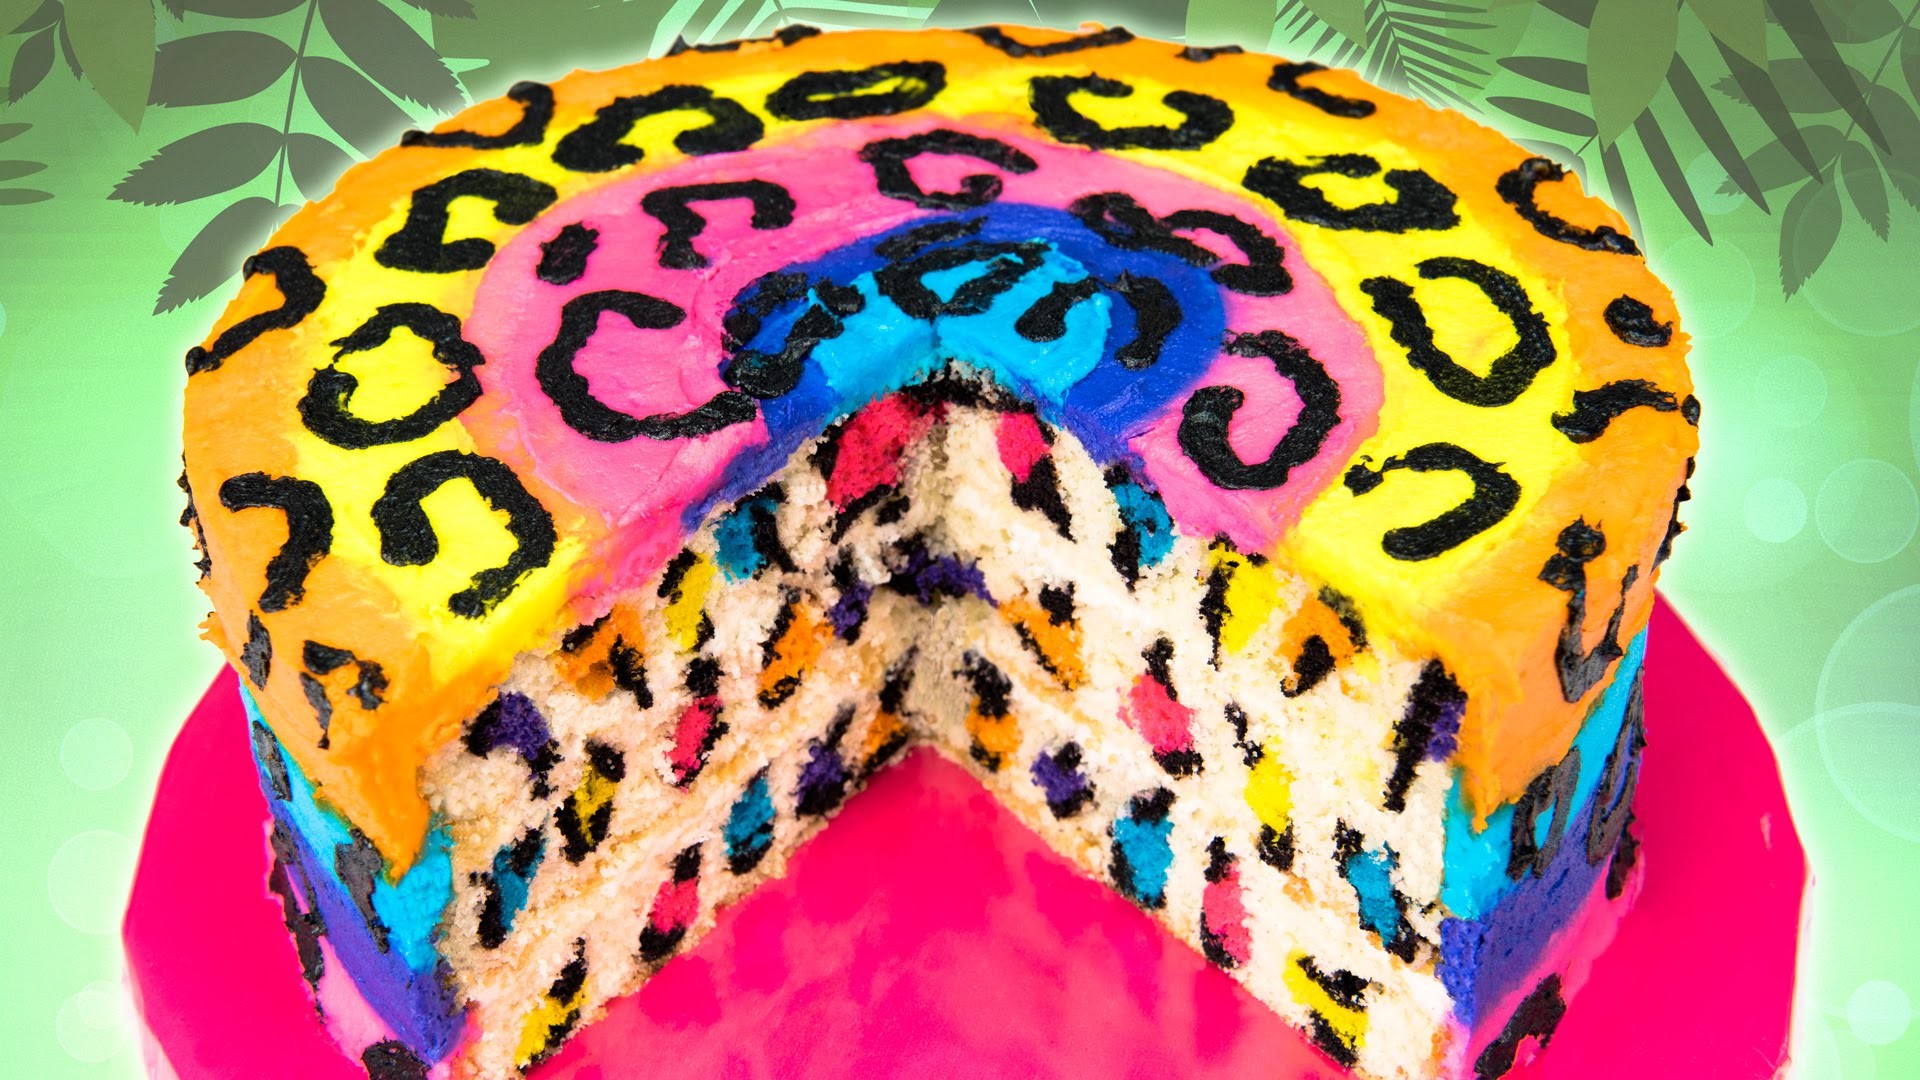 Леопардовый торт